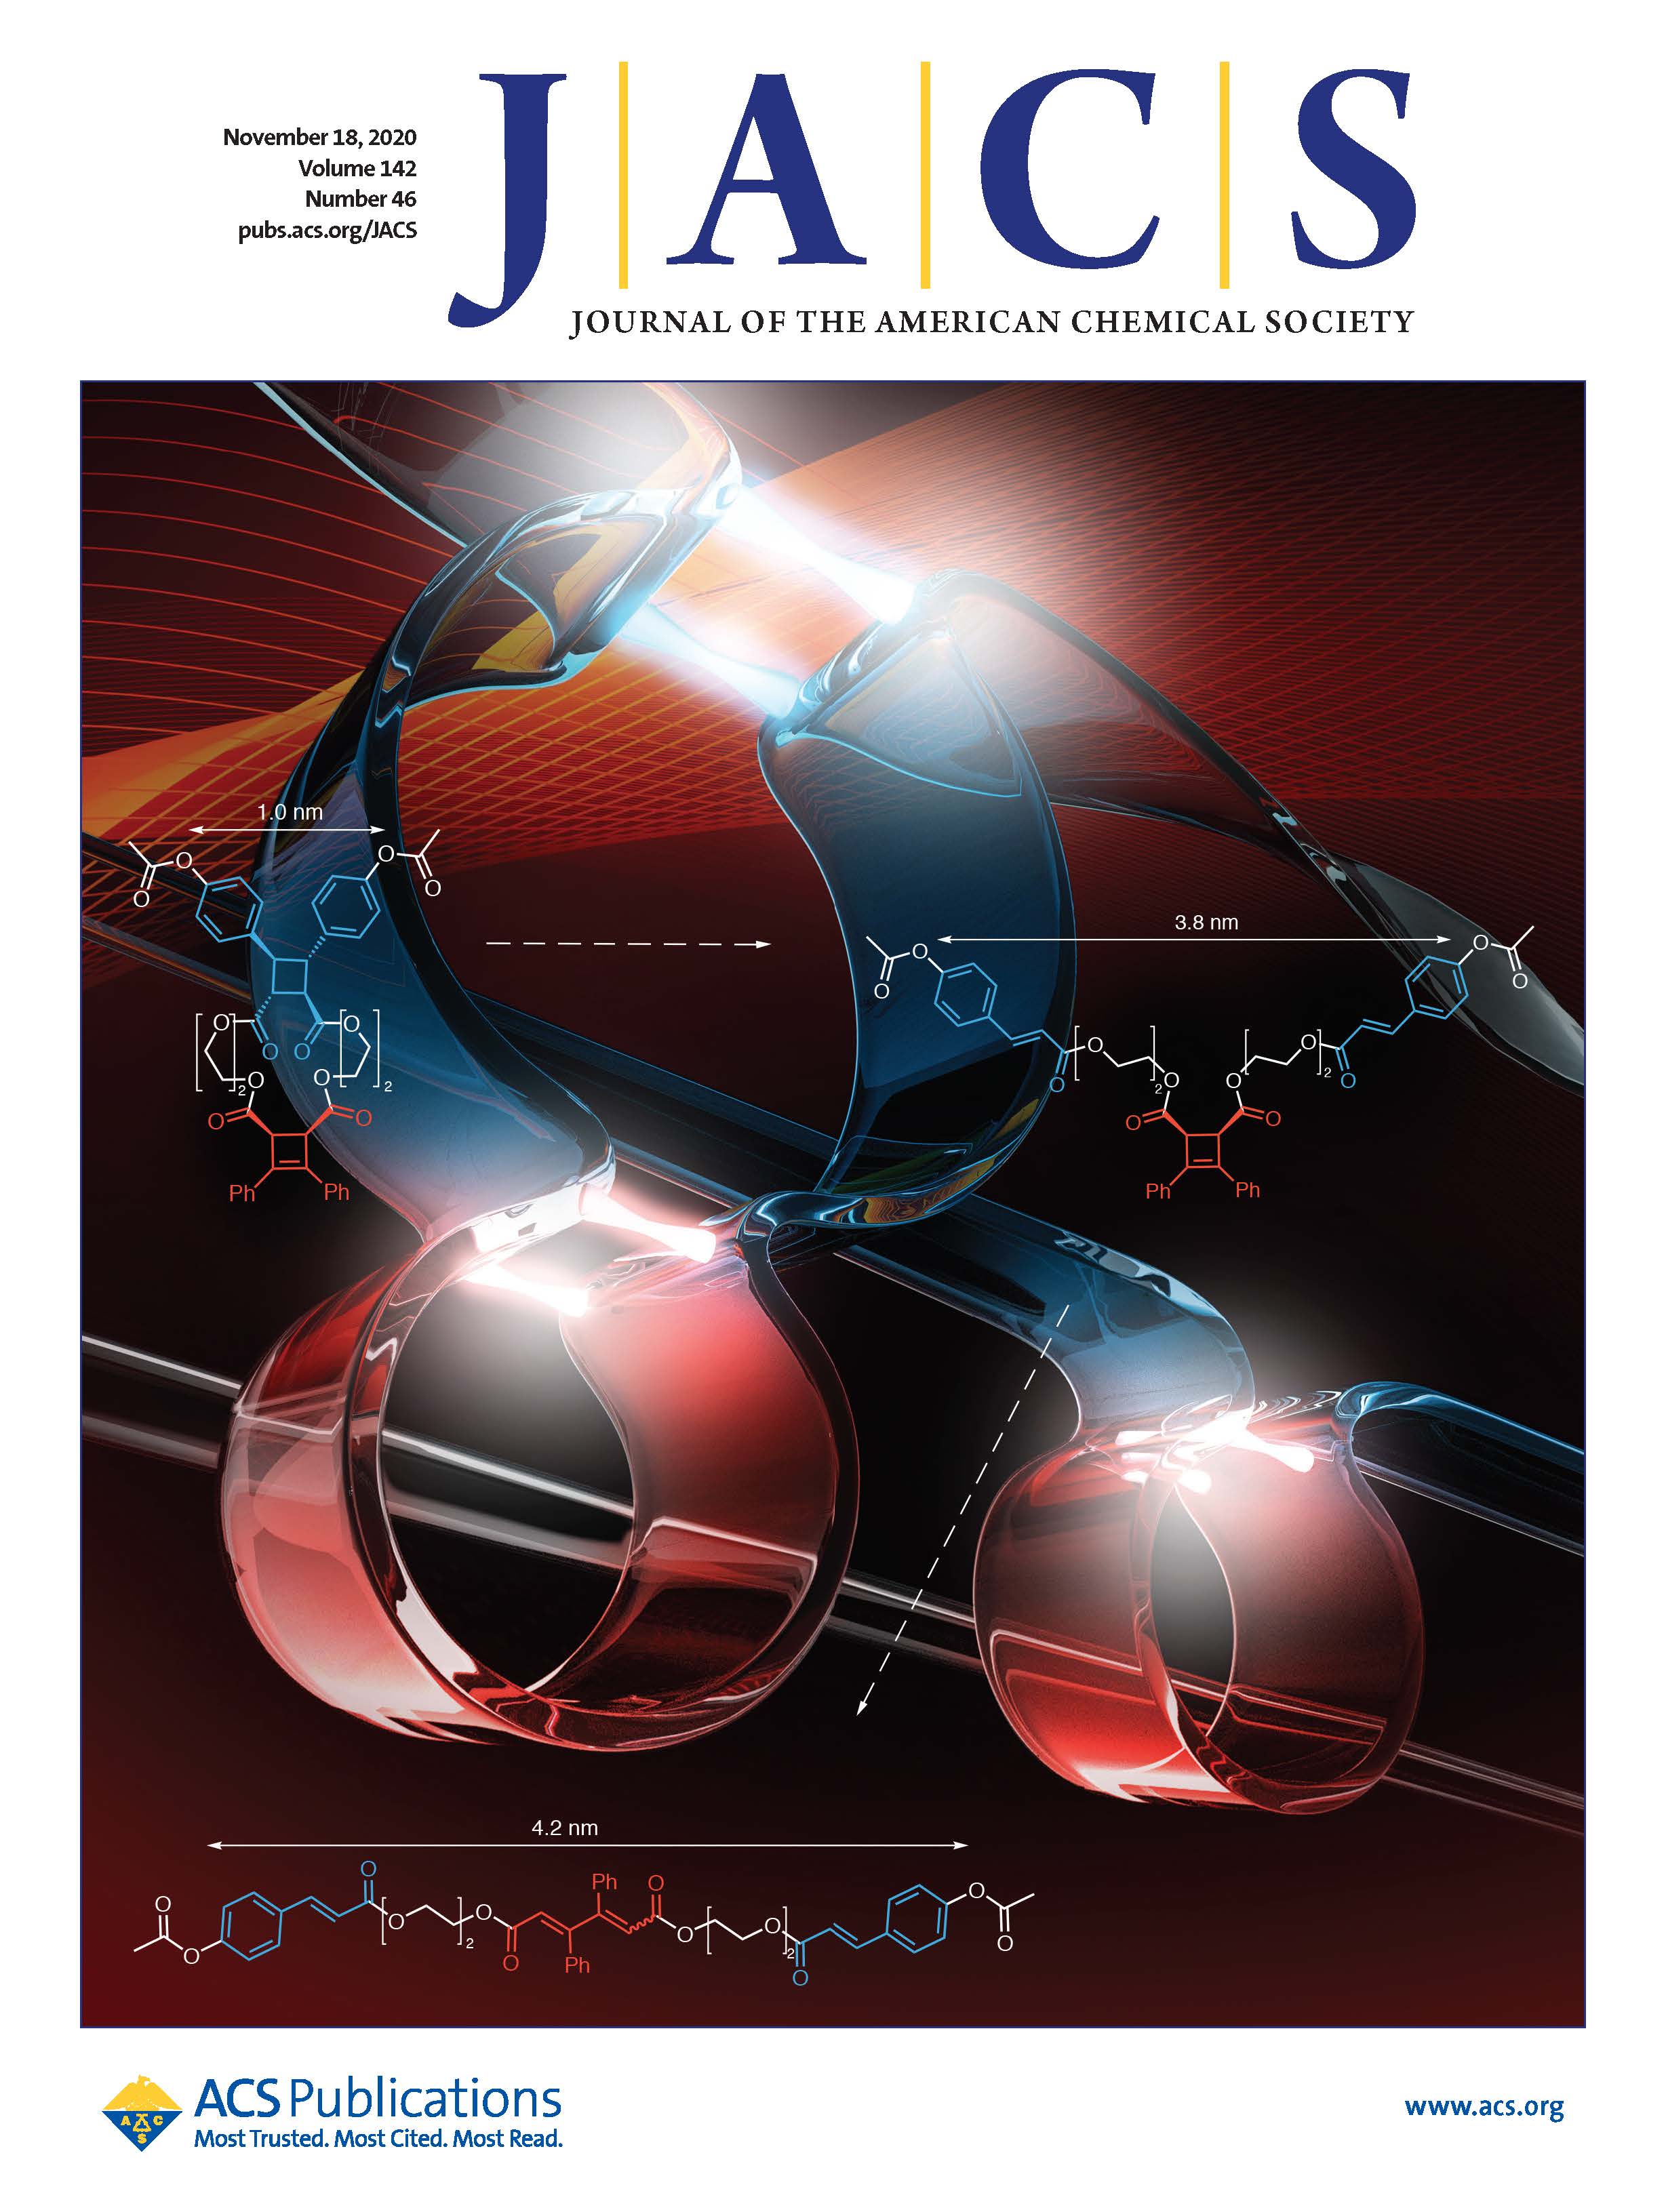 J. Am. Chem. Soc. November 2020 cover